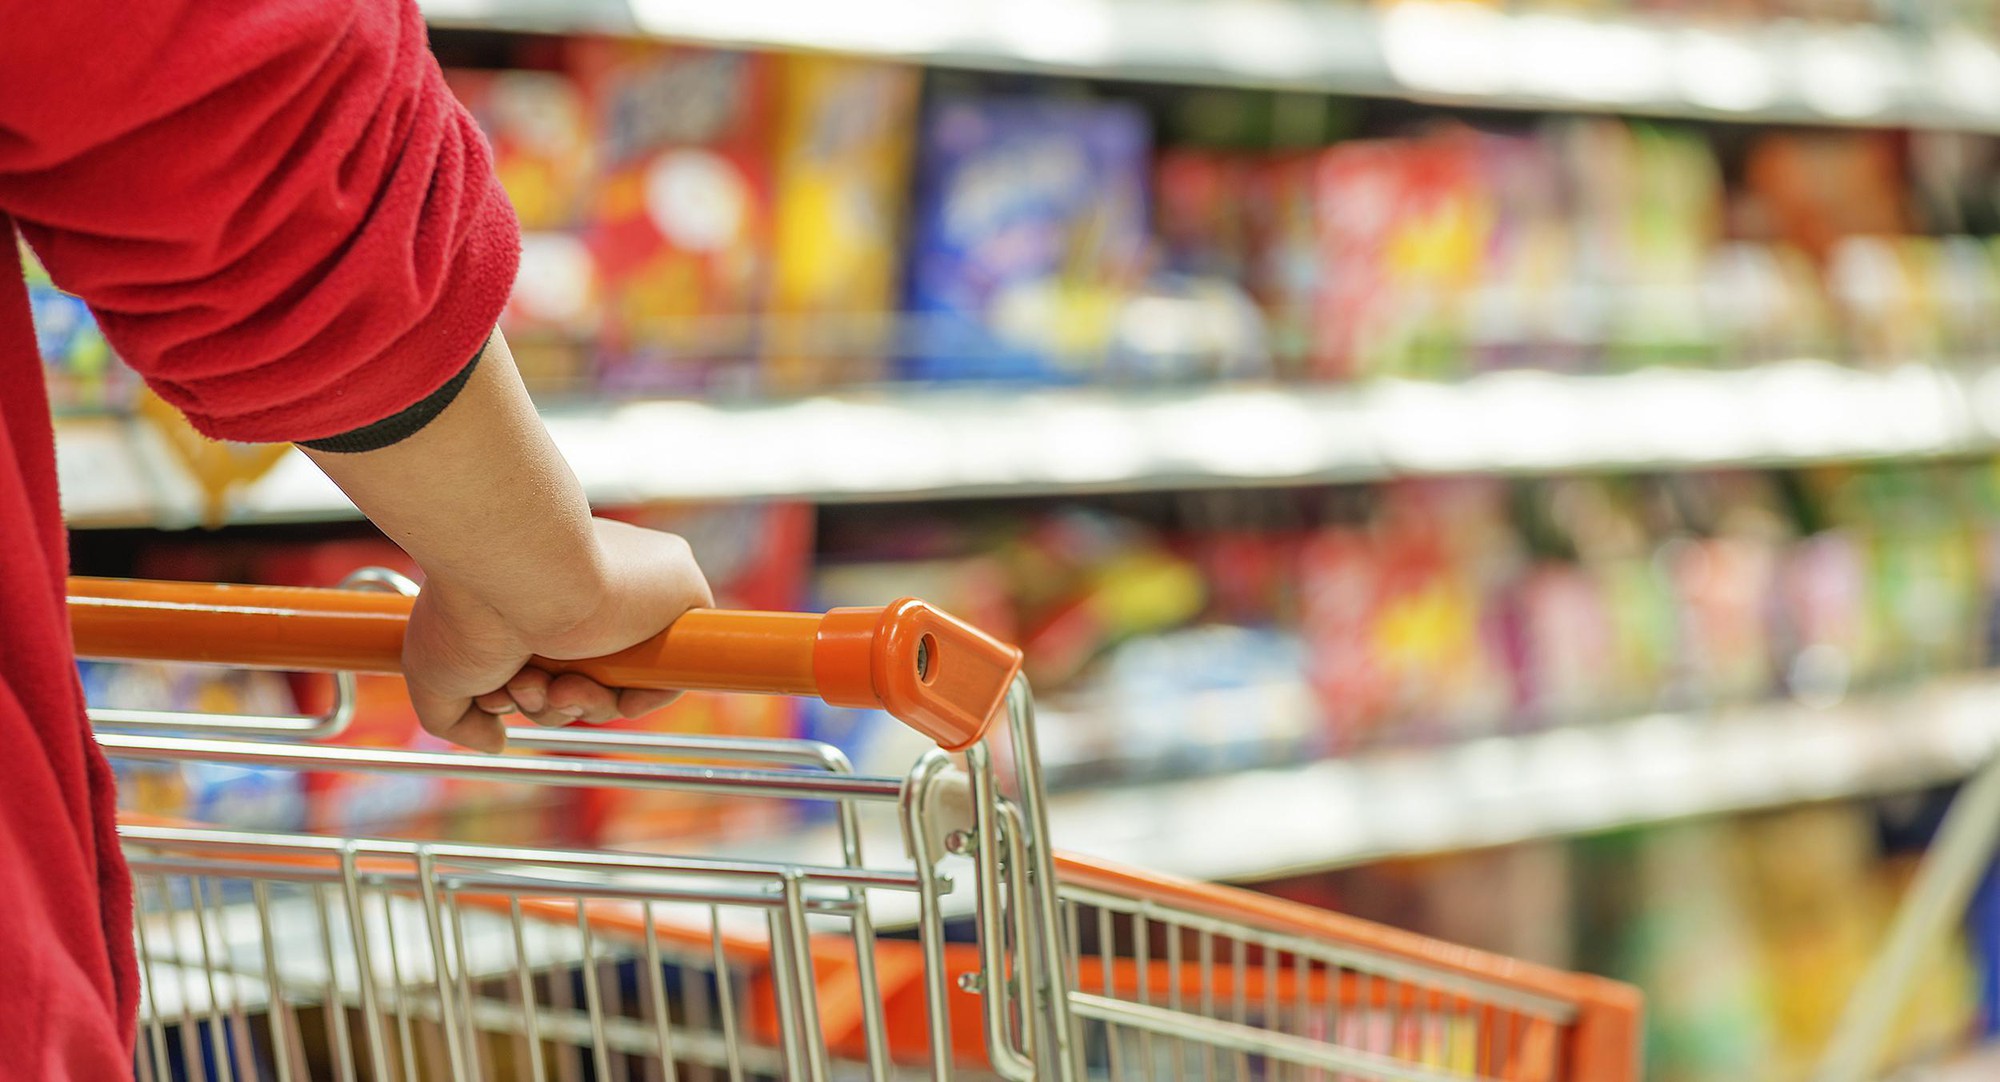 Tiết lộ 8 mẹo khi mua đồ ăn ở siêu thị giúp tiết kiệm tiền, chắc chắn nhiều người không để ý - Ảnh 4.